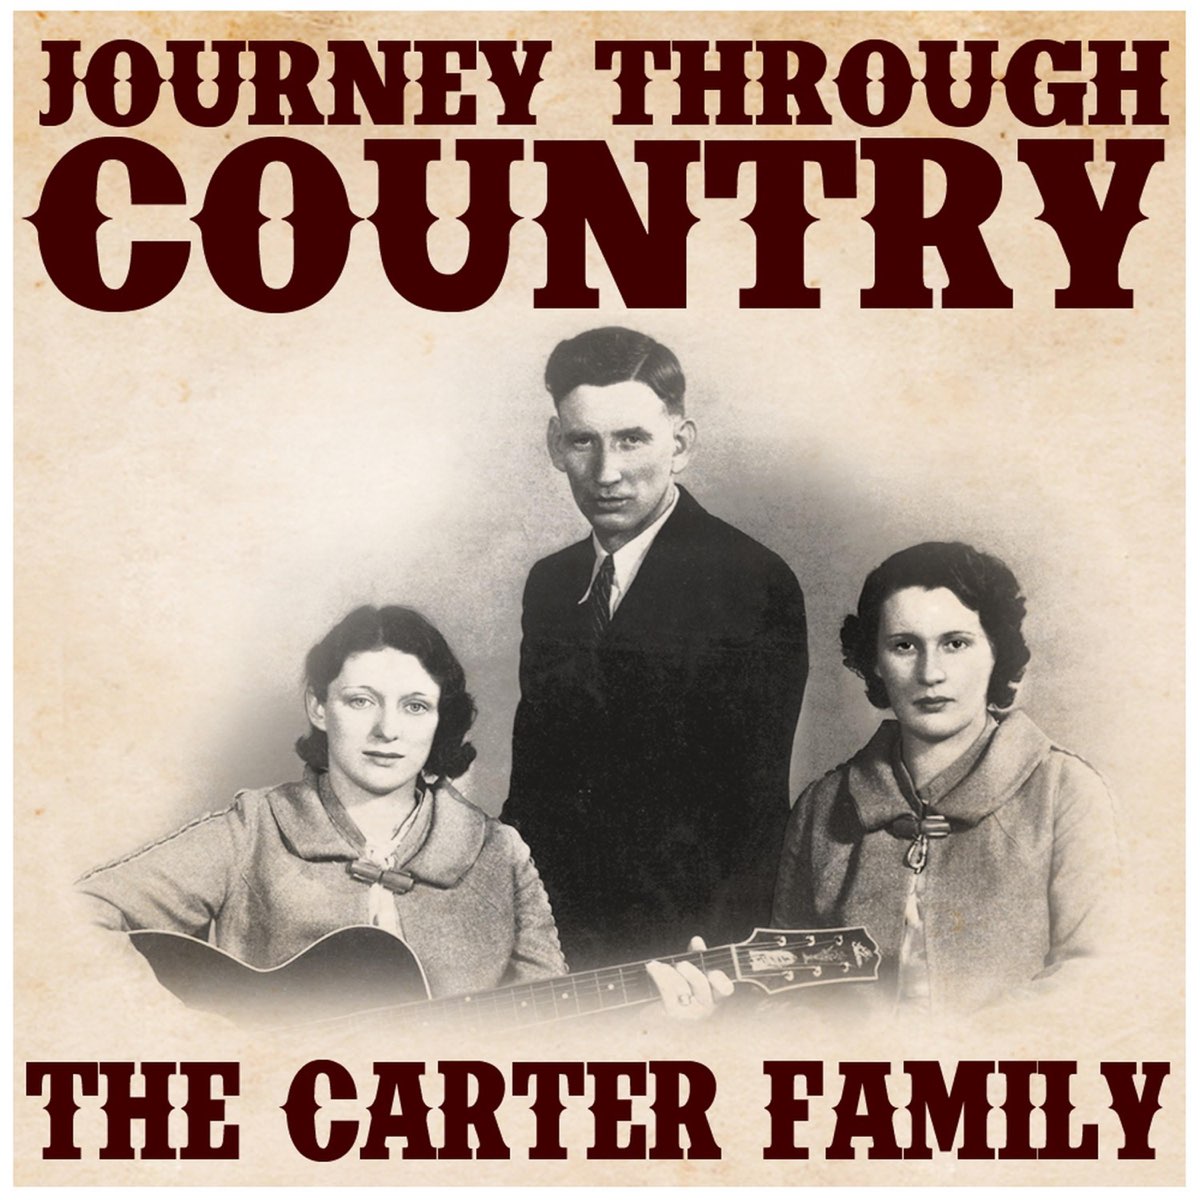 Создавайте семьи песня. Carter Family. Фото обложки семейных песен. Carter Family engine one-Forty-three.